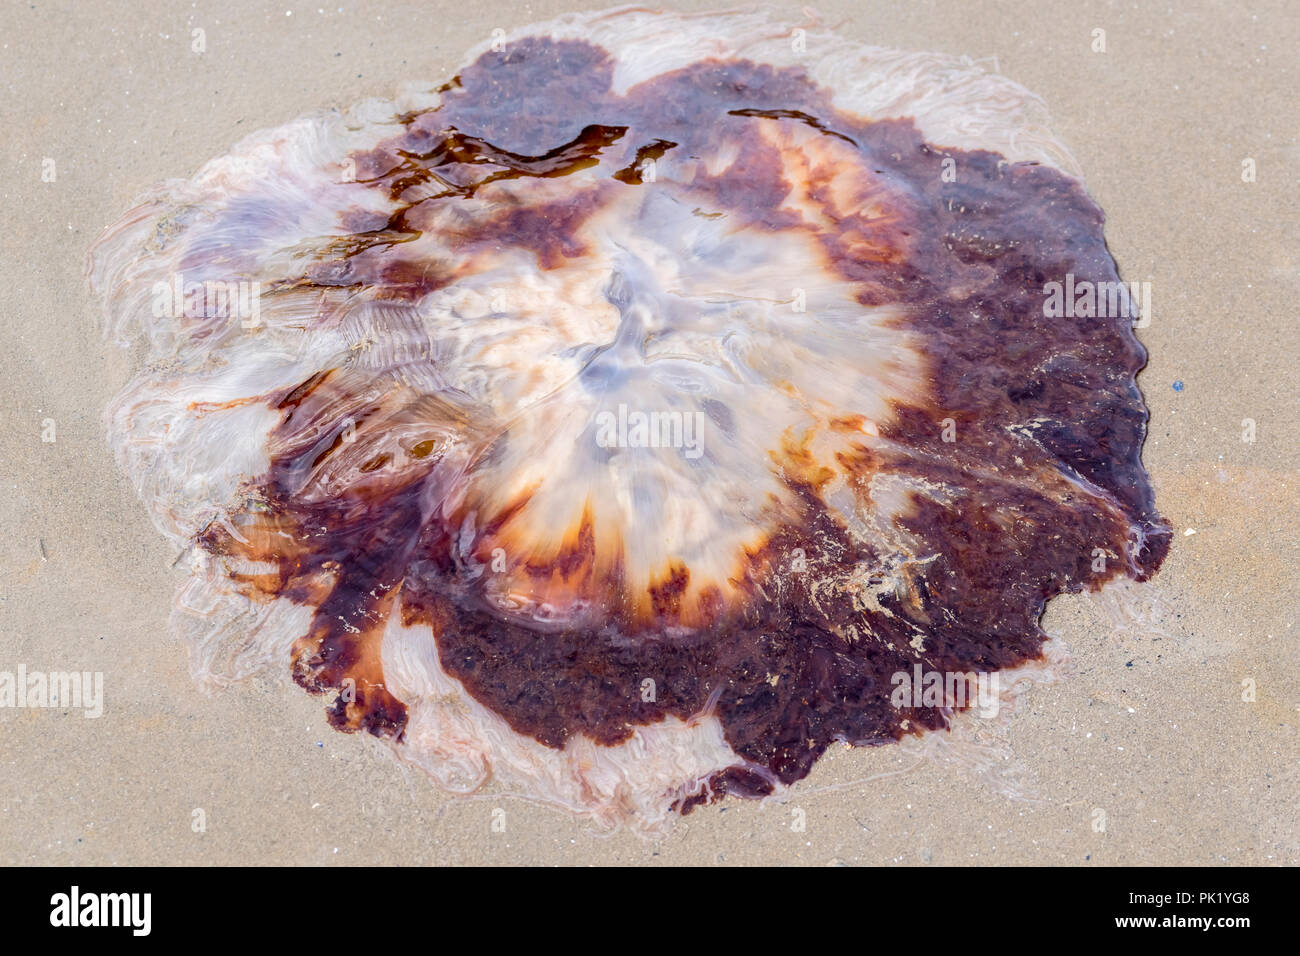 Méduse à crinière de lion Cyanea capillata échoués sur la plage Banque D'Images